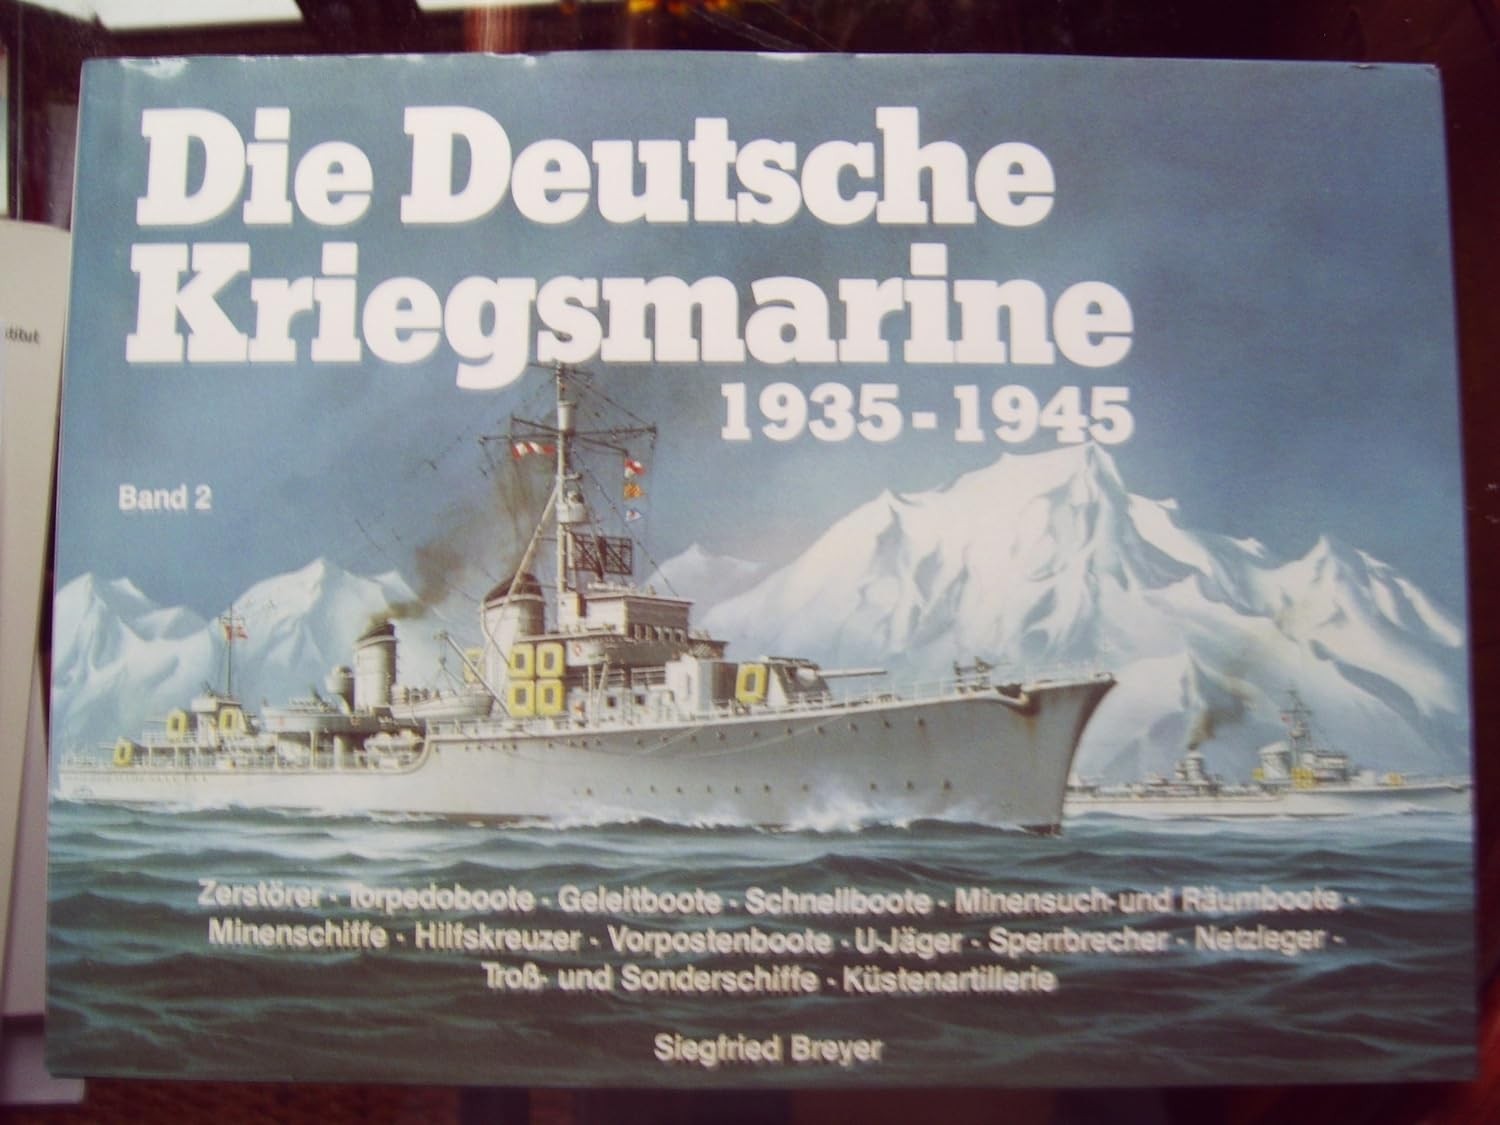 Die Deutsche Kriegsmarine 1935-1945 band 2